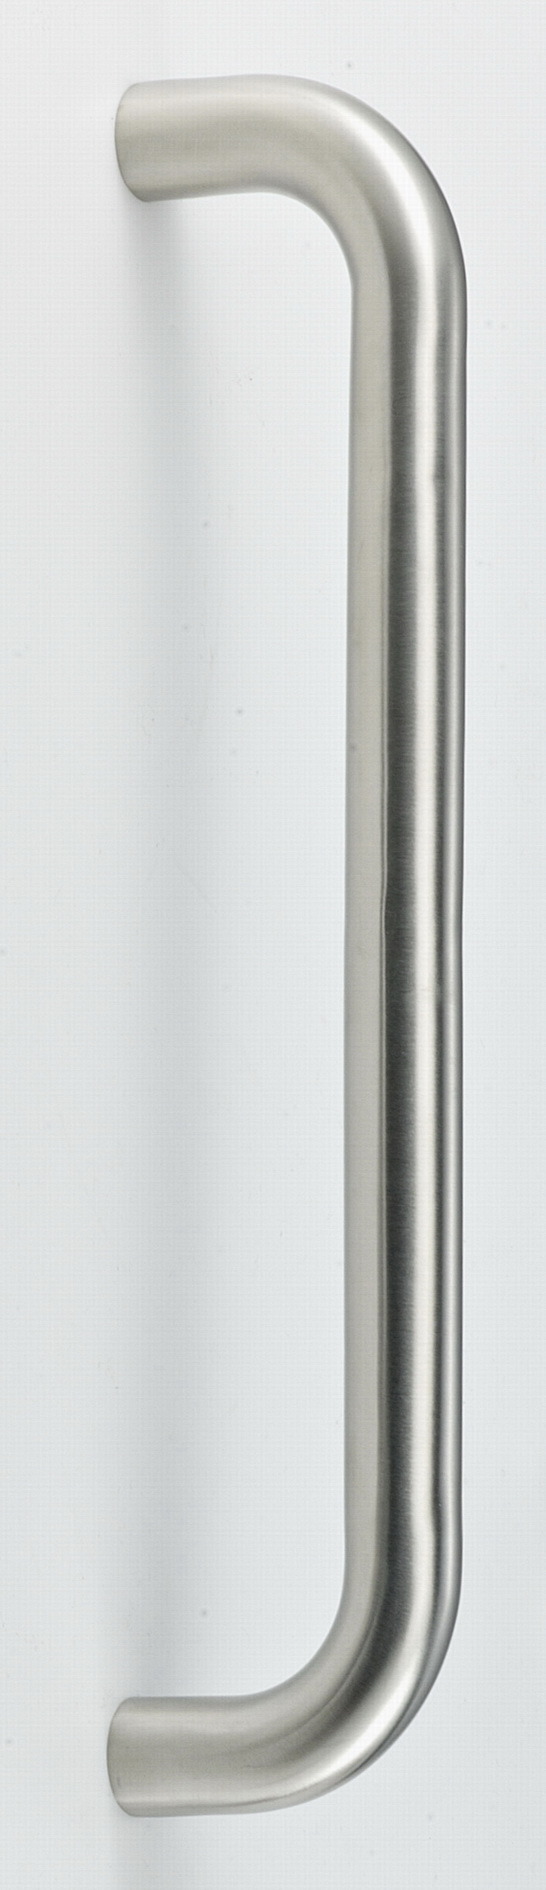 Stainless Steel Glass Door Pull Handle